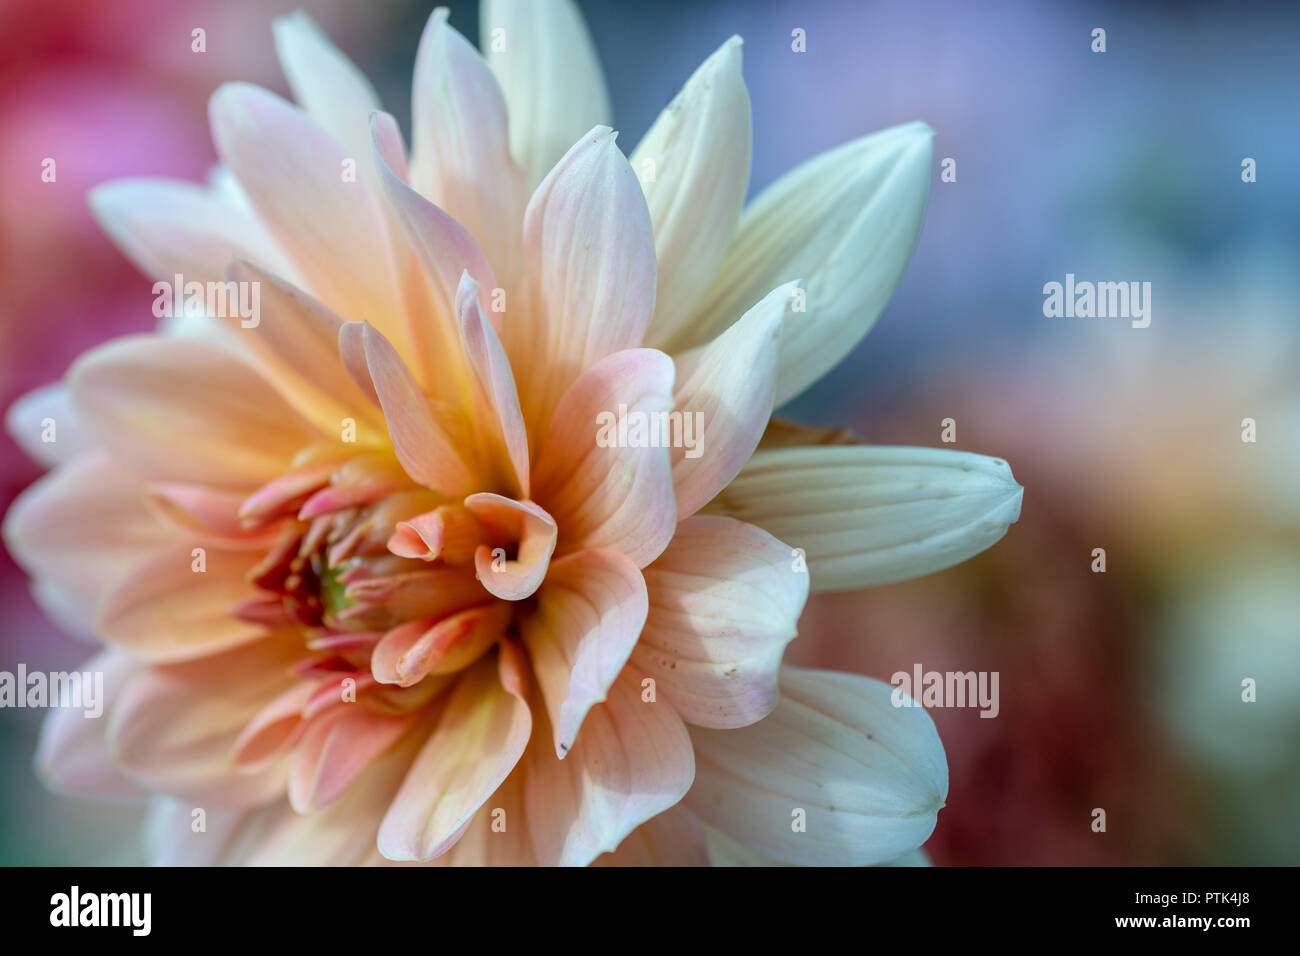 Chastworth Garden - Chrysanthemum flower closeup Stock Photo